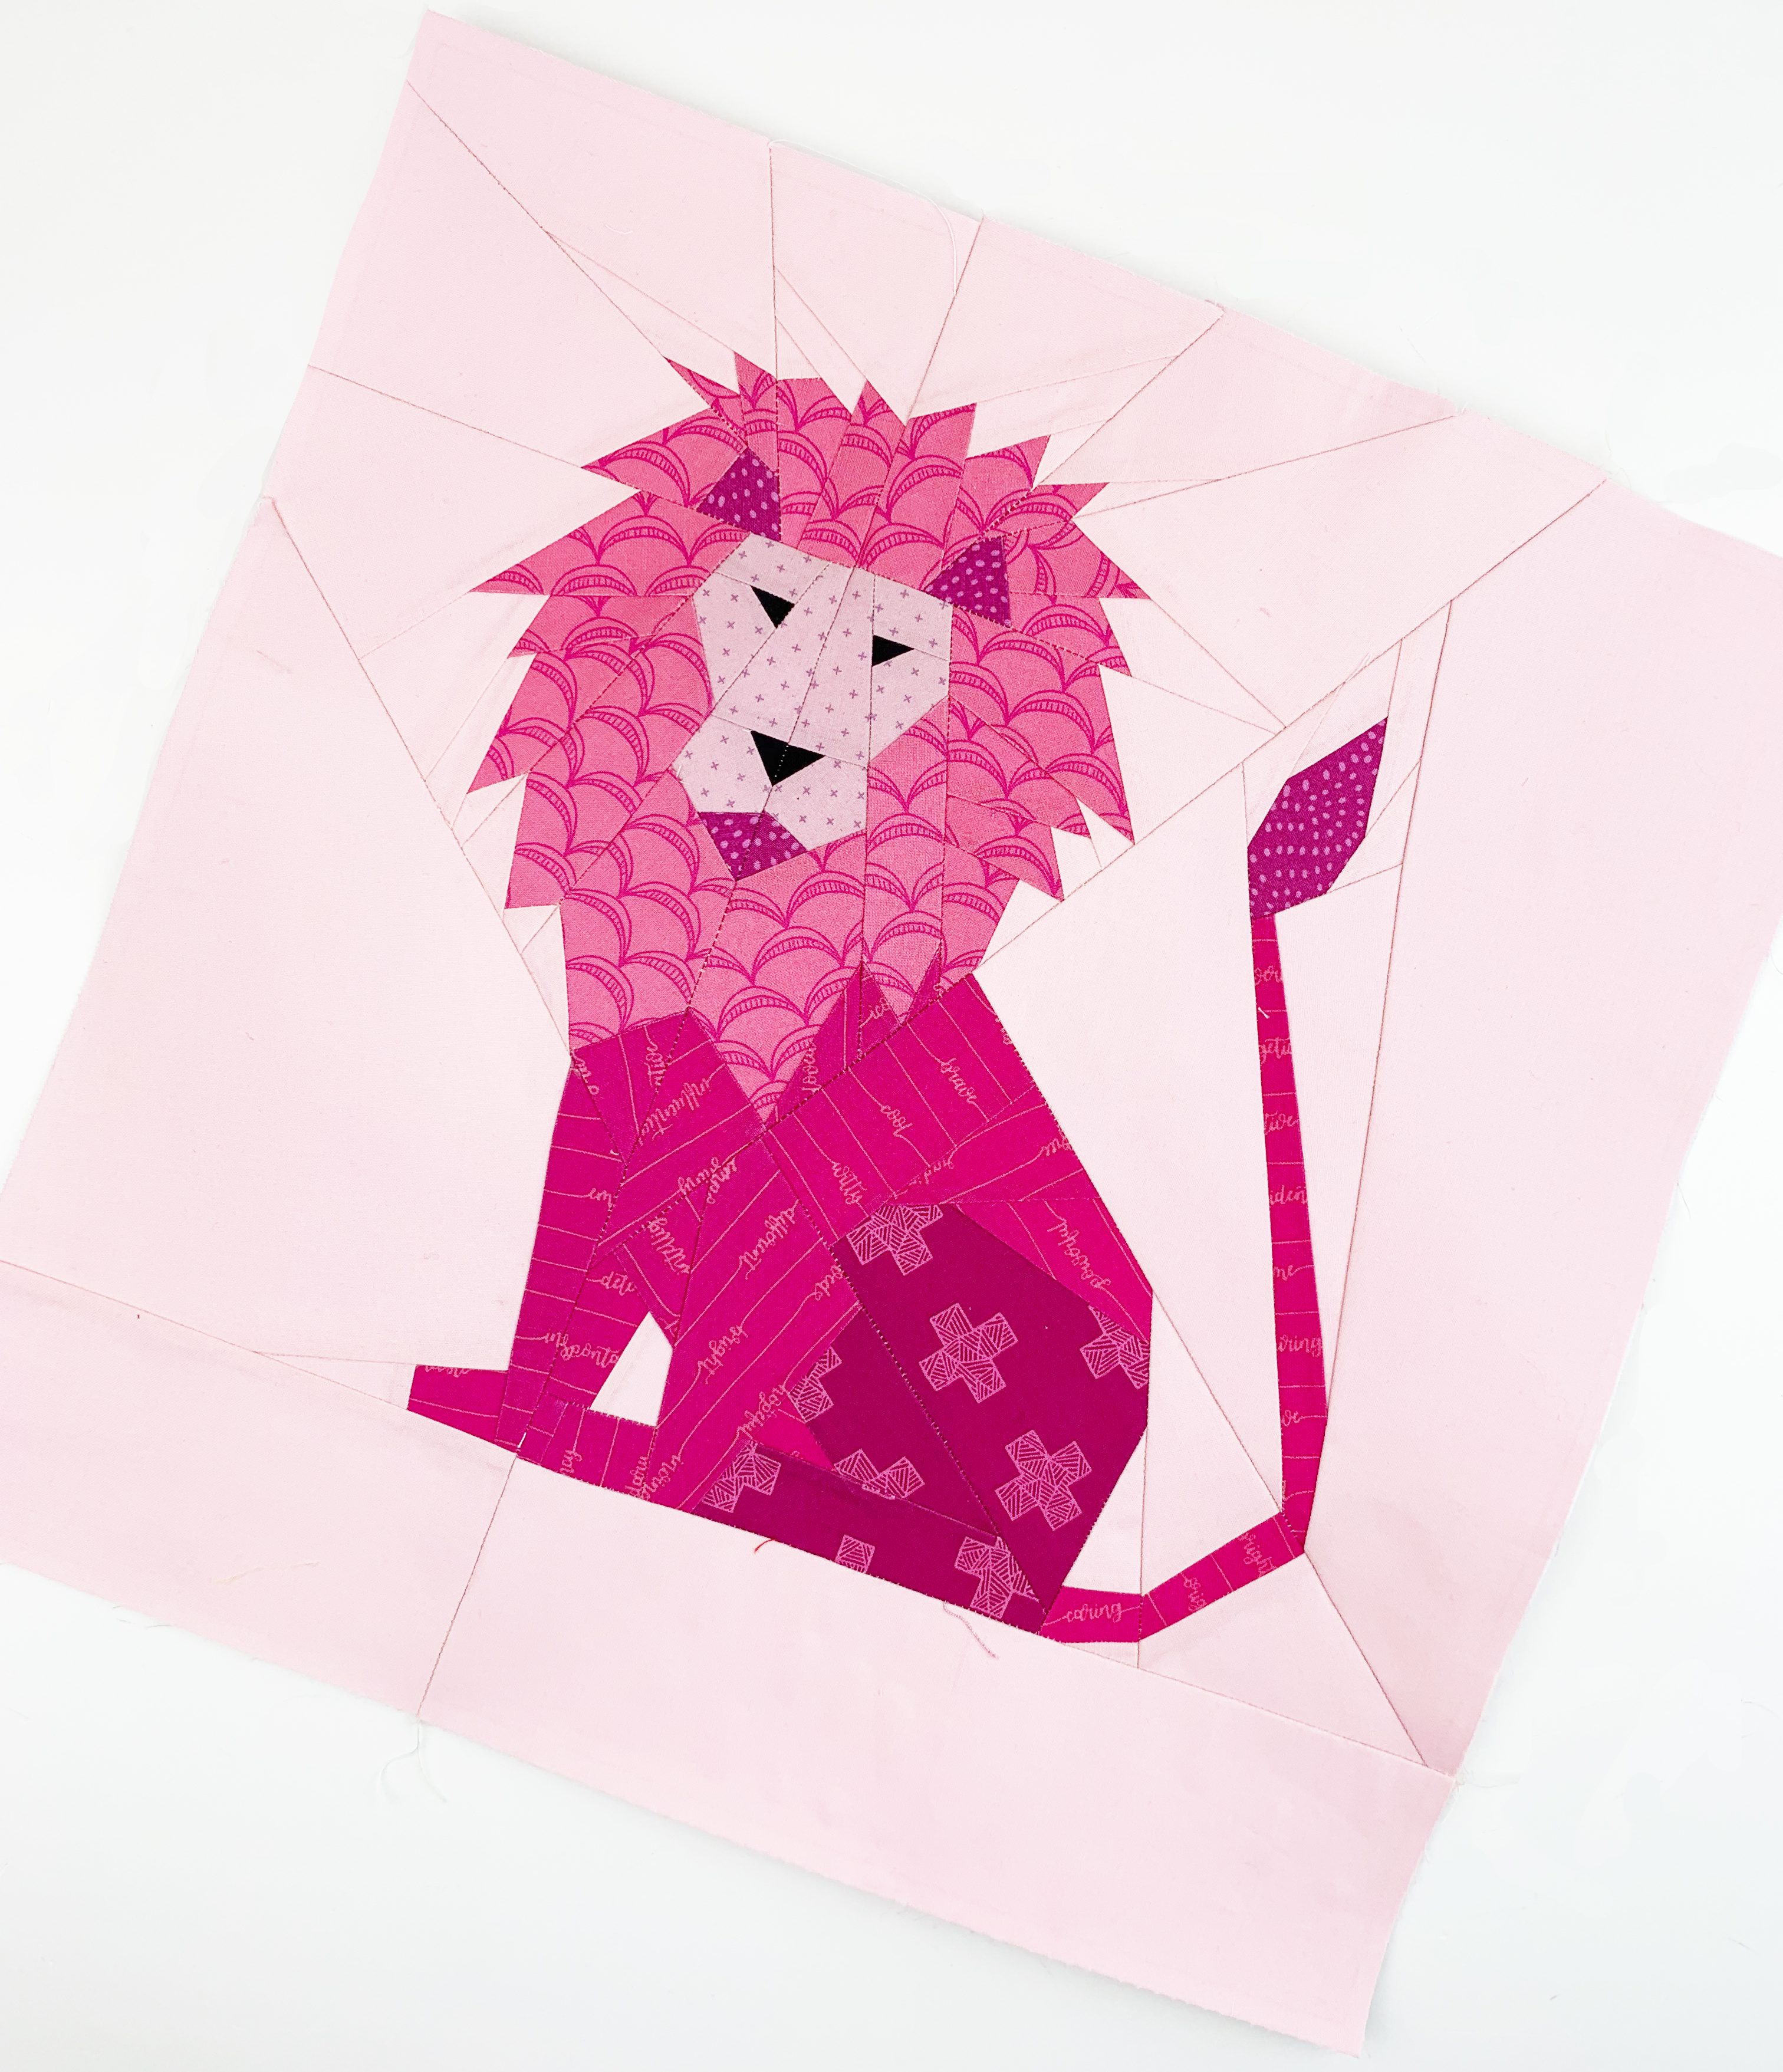 lion quilt block pattern 